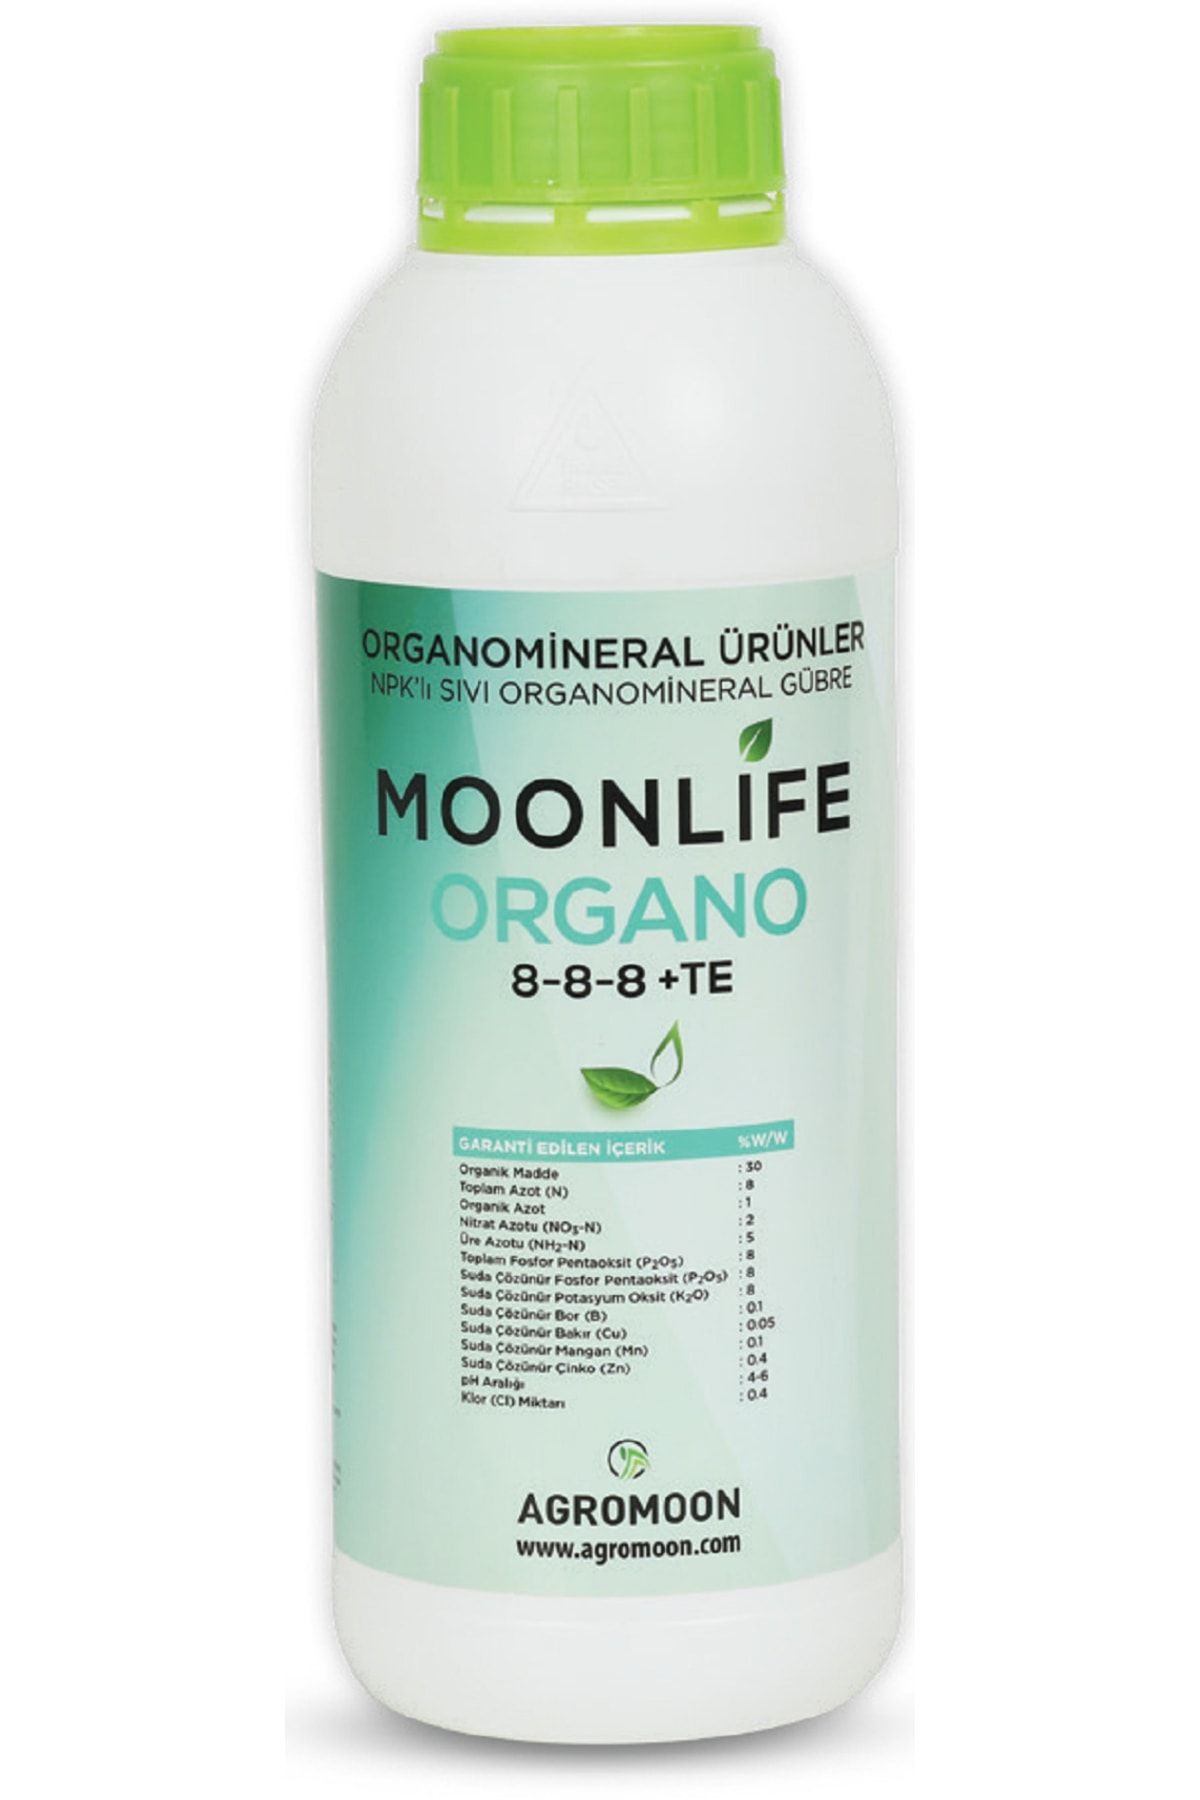 Moonlife Organo 8-8-8+te Npk Lı Sıvı Organamineral Gübre 1 lt